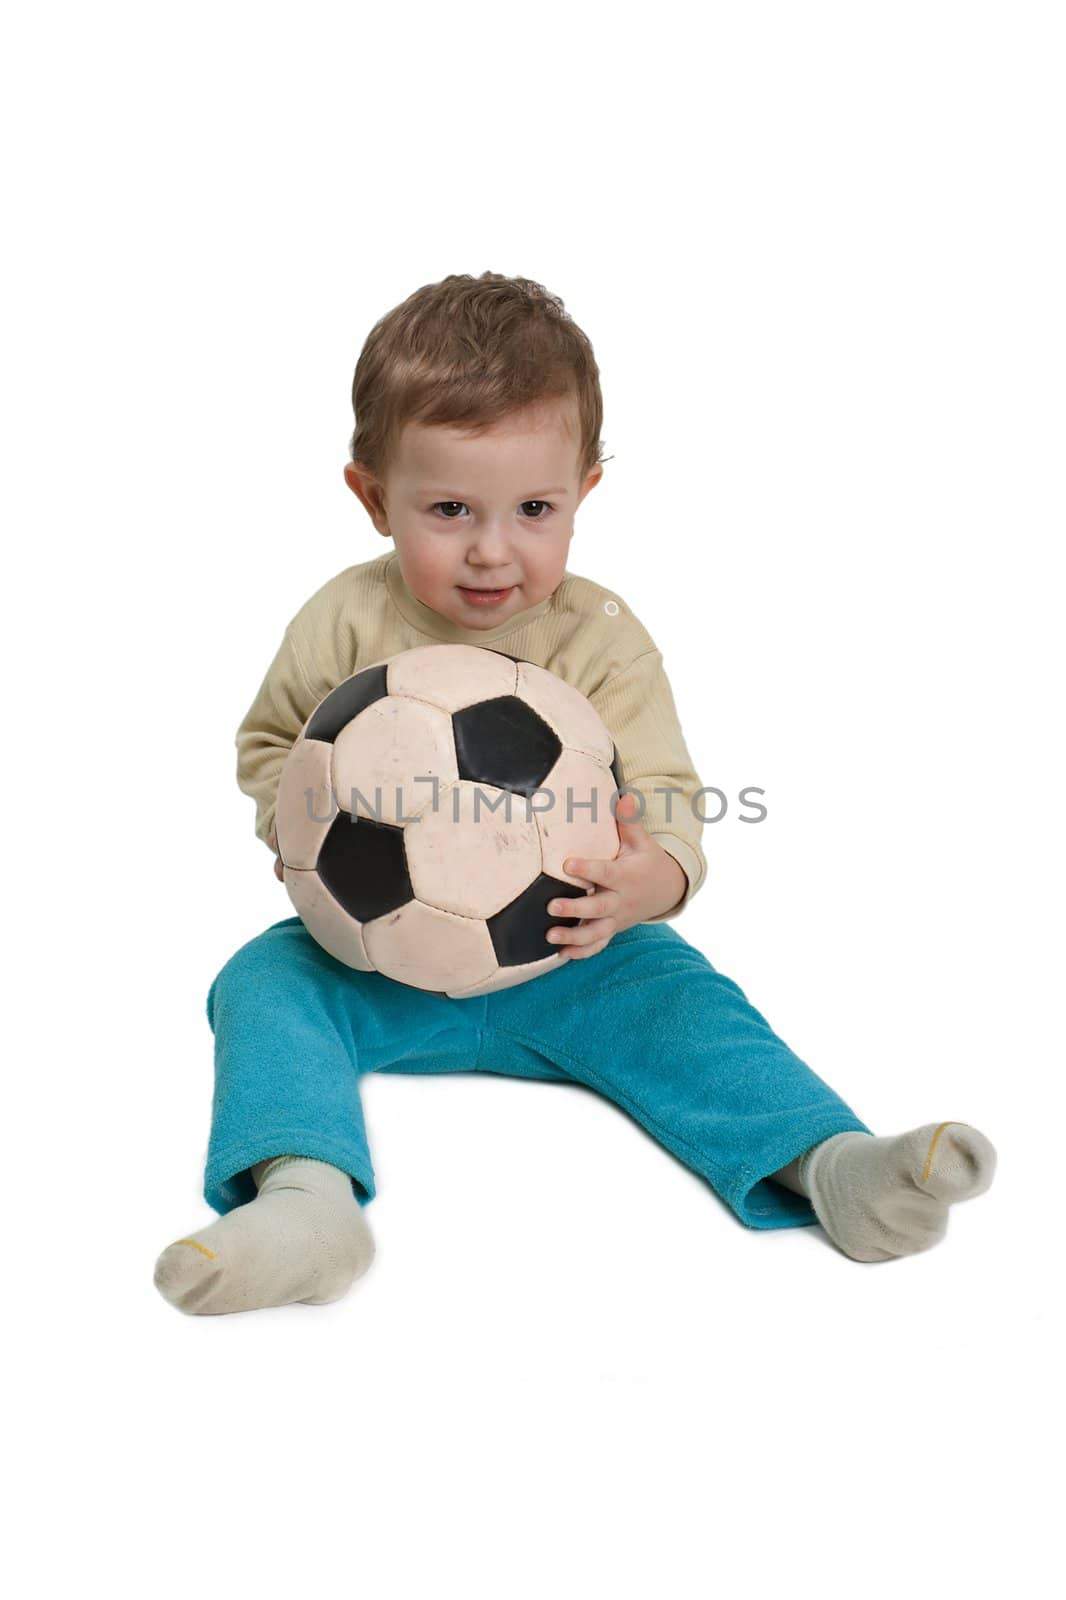 Black white football or soccer sport ball in hand